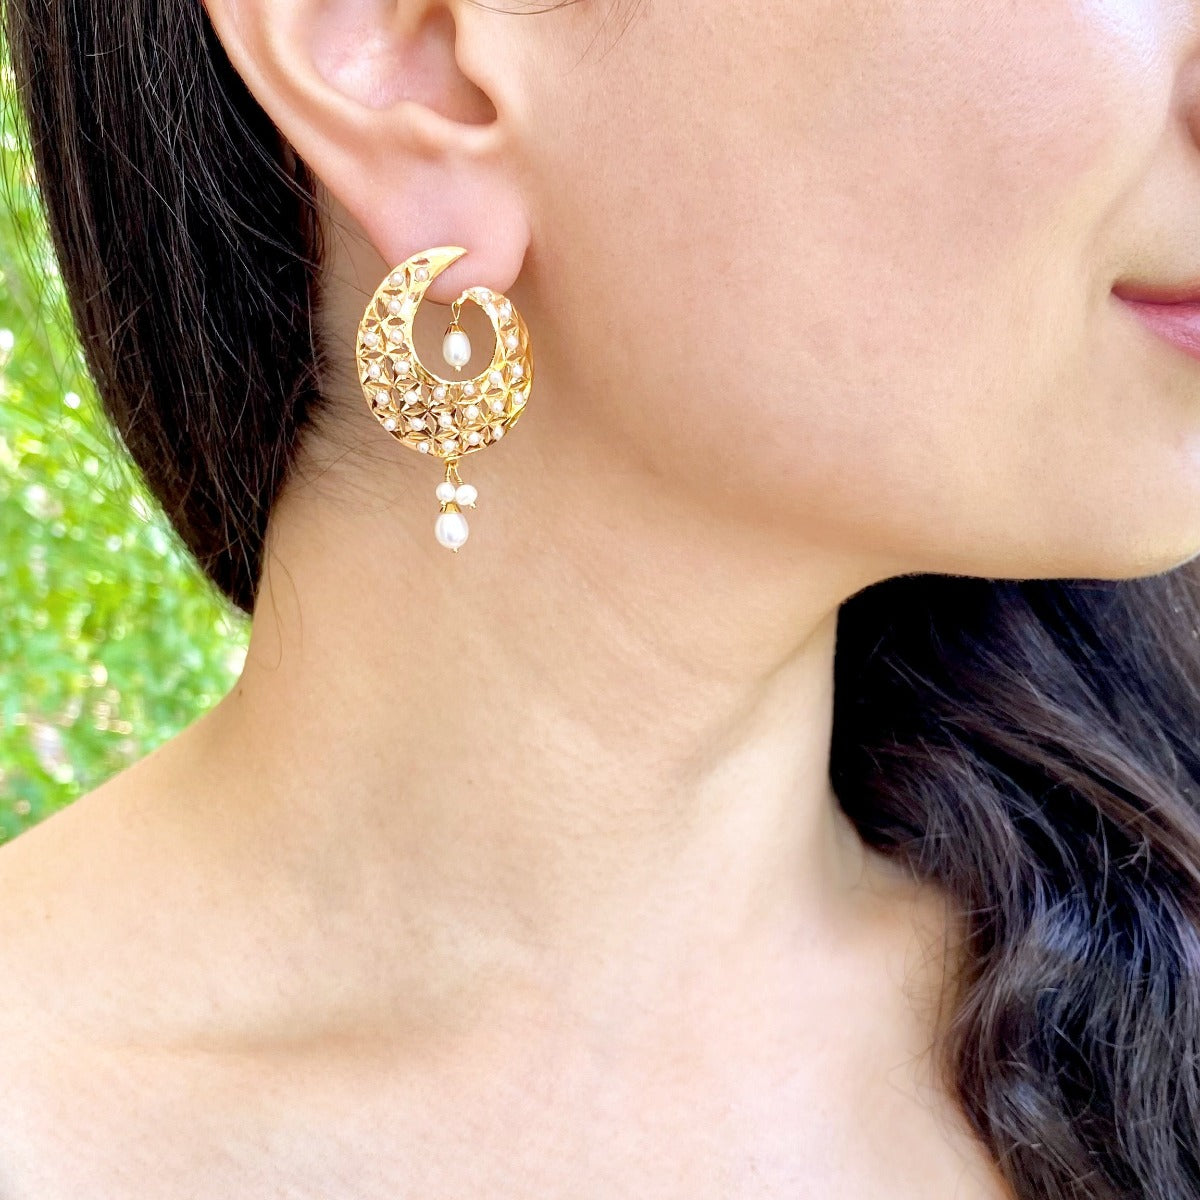 22k jadau earrings studded with pearls for women